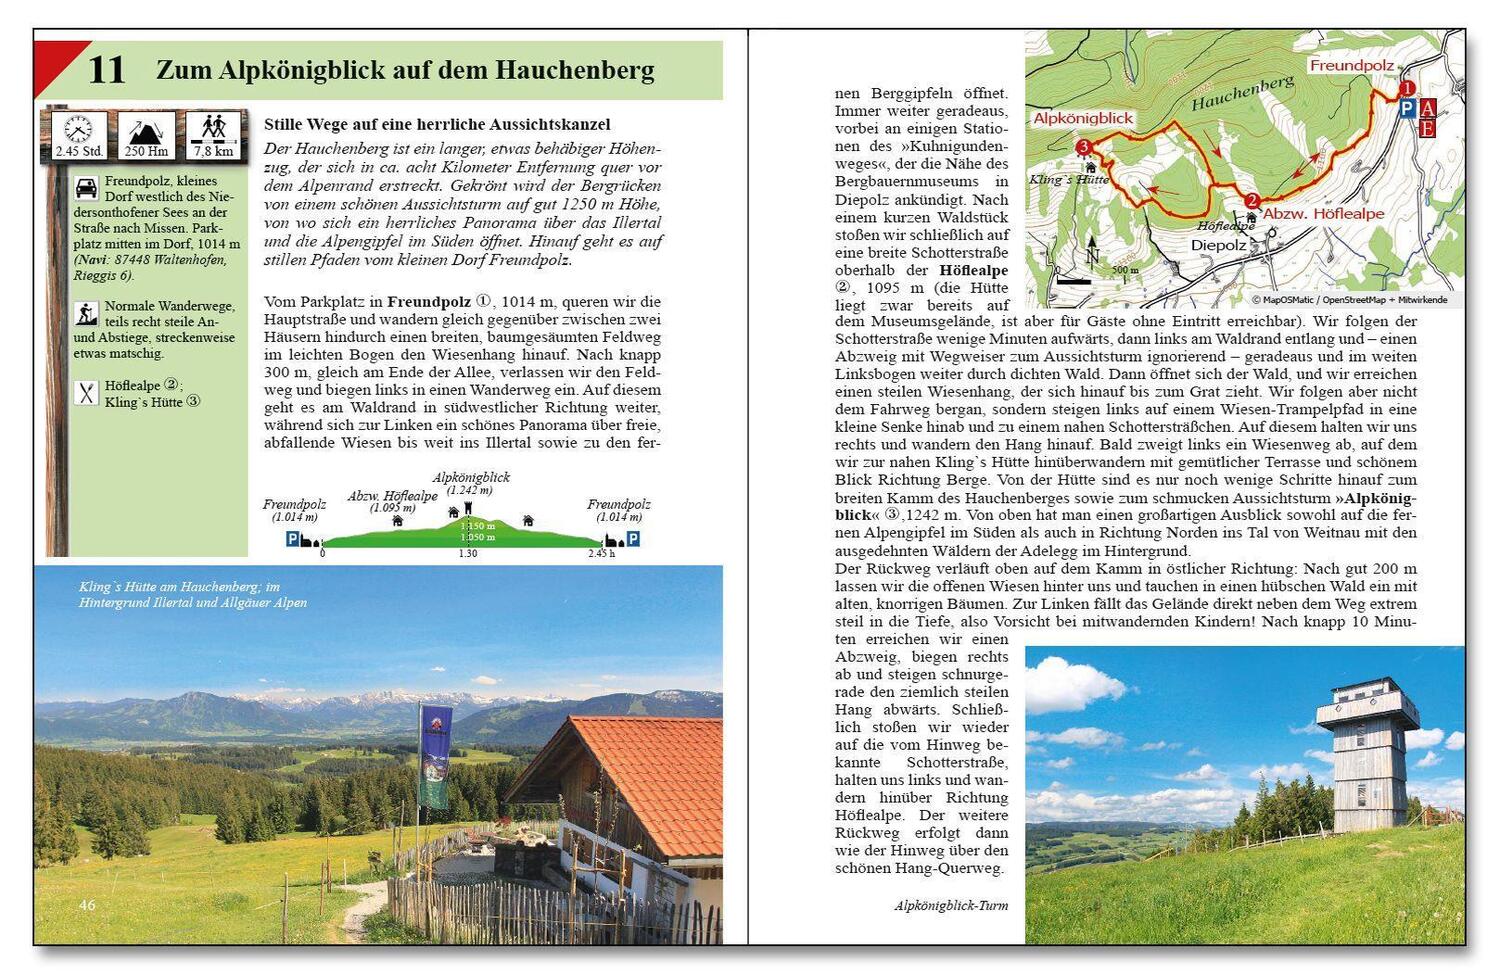 Bild: 9783949988134 | Leichte Wanderungen Oberallgäu | Gerald Schwabe | Taschenbuch | 2022